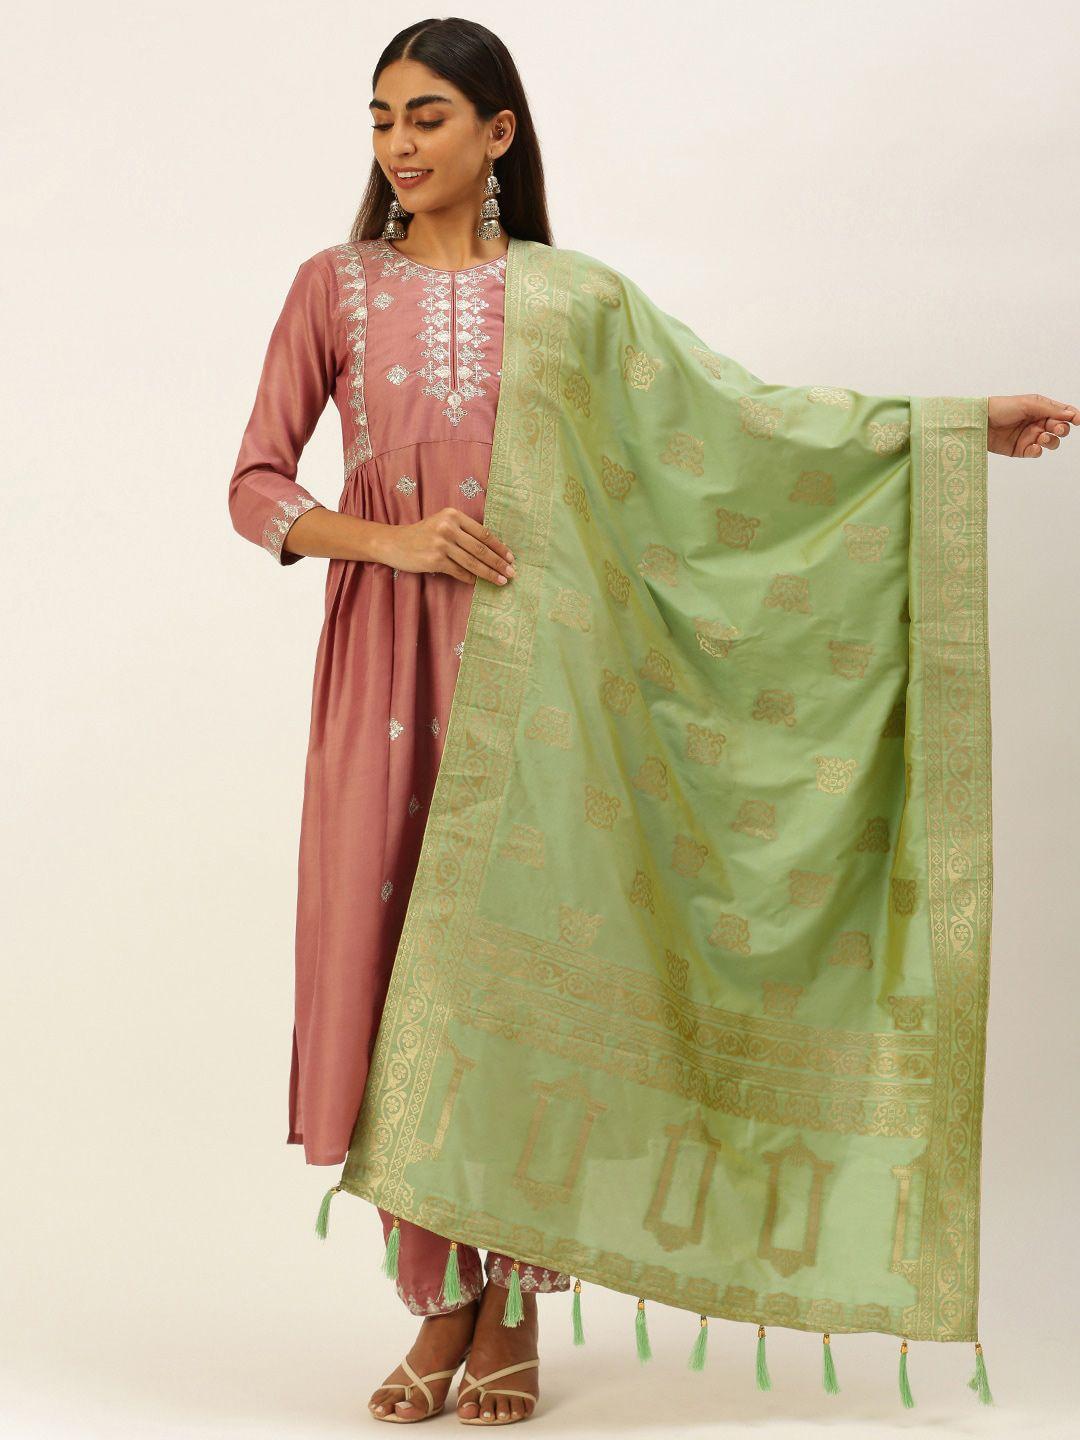 panchhi-green-&-gold-toned-ethnic-motifs-woven-design-dupatta-with-zari